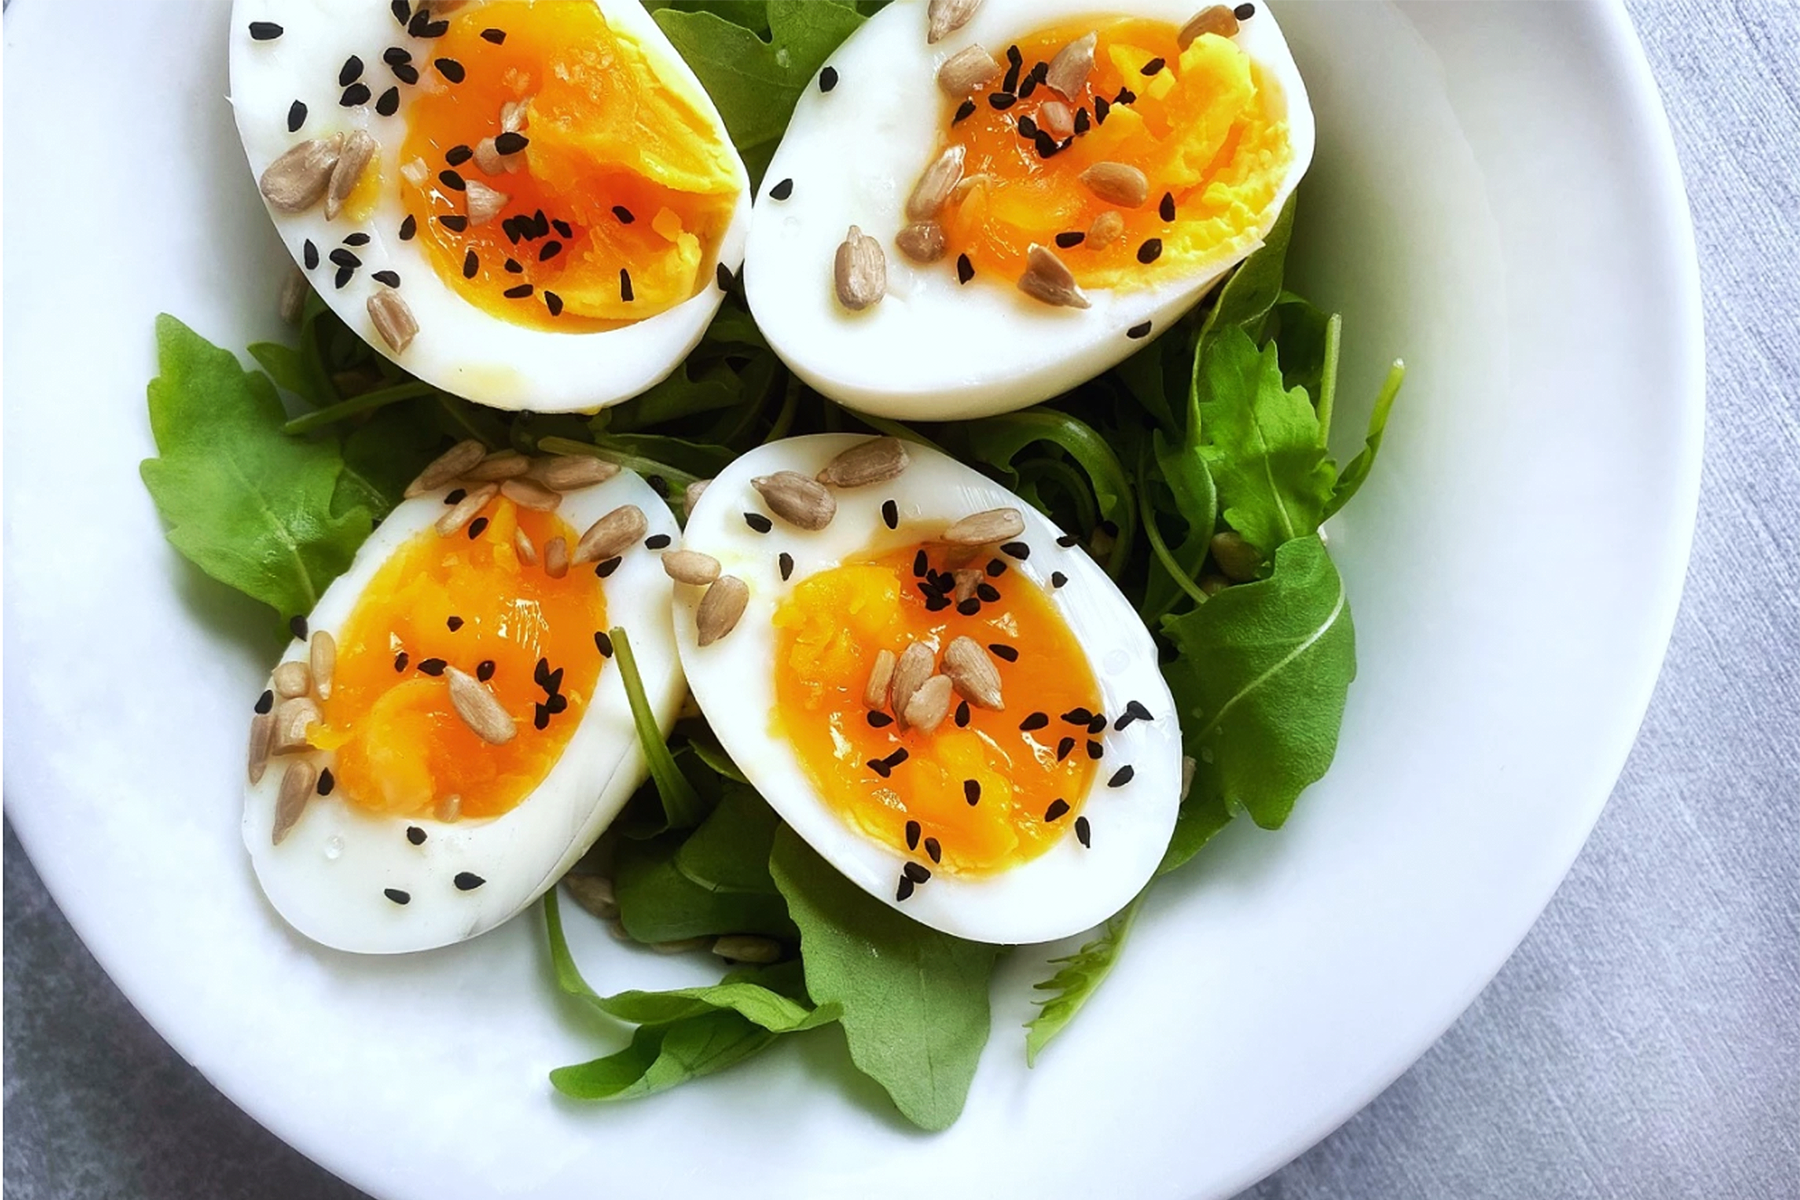 Healthy Eggs & Salad recipe